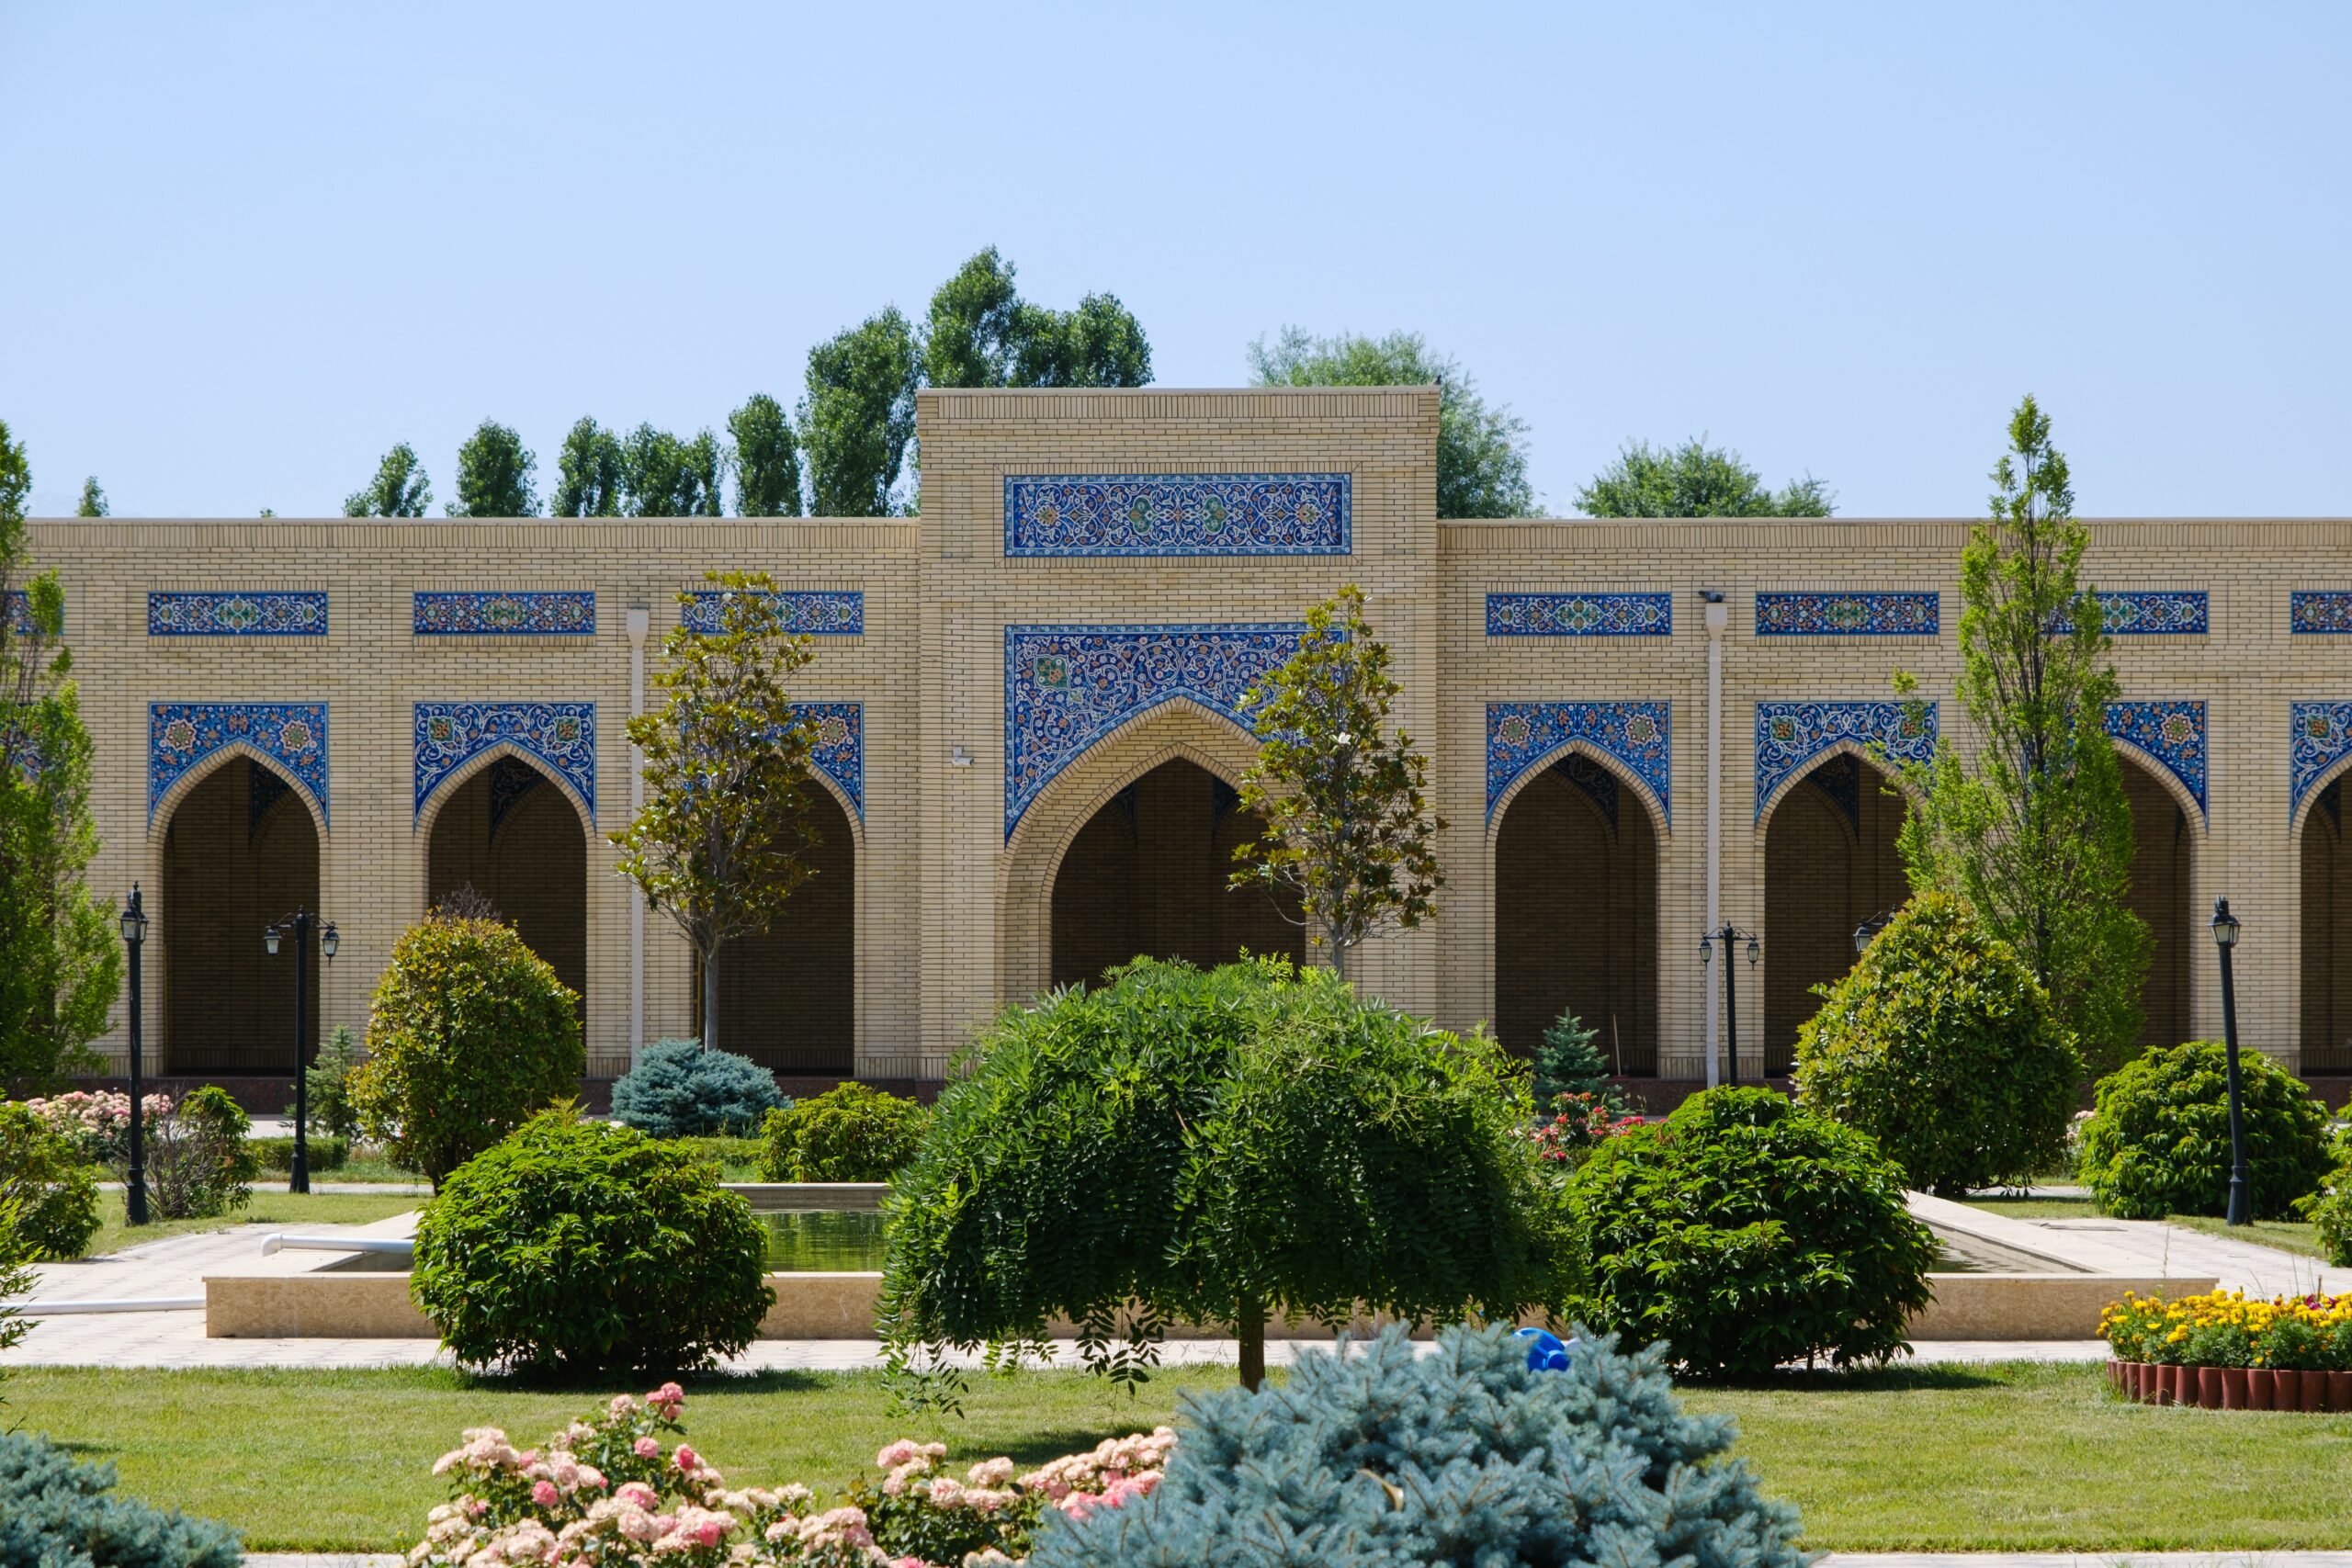 Vista da frente da Mesquita Marifat em Zaamin, Uzbequistão - Representa seguro viagem Uzbequistão.